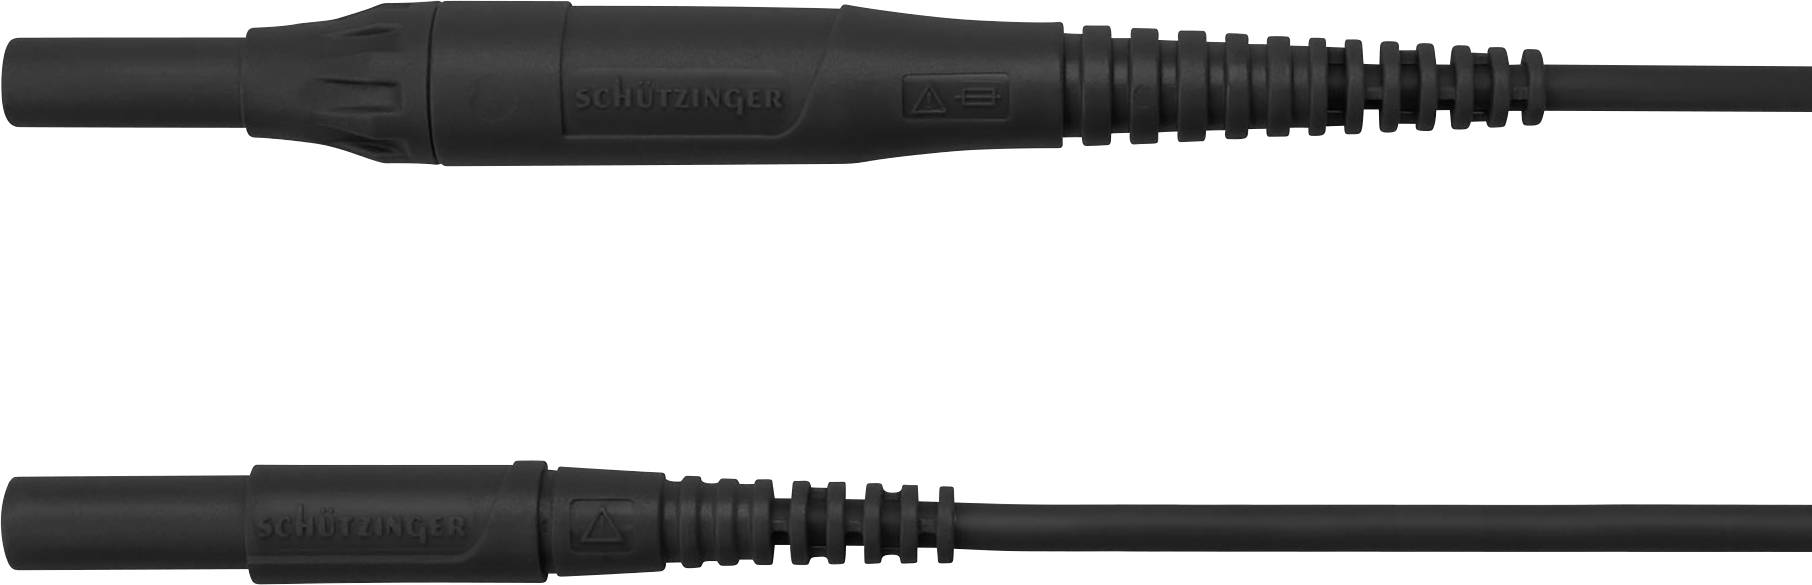 SCHÜTZINGER MSFK B441 / 1 / 200 / SW Messleitung [Stecker 4 mm - Stecker 4 mm] 200.00 cm Schwar